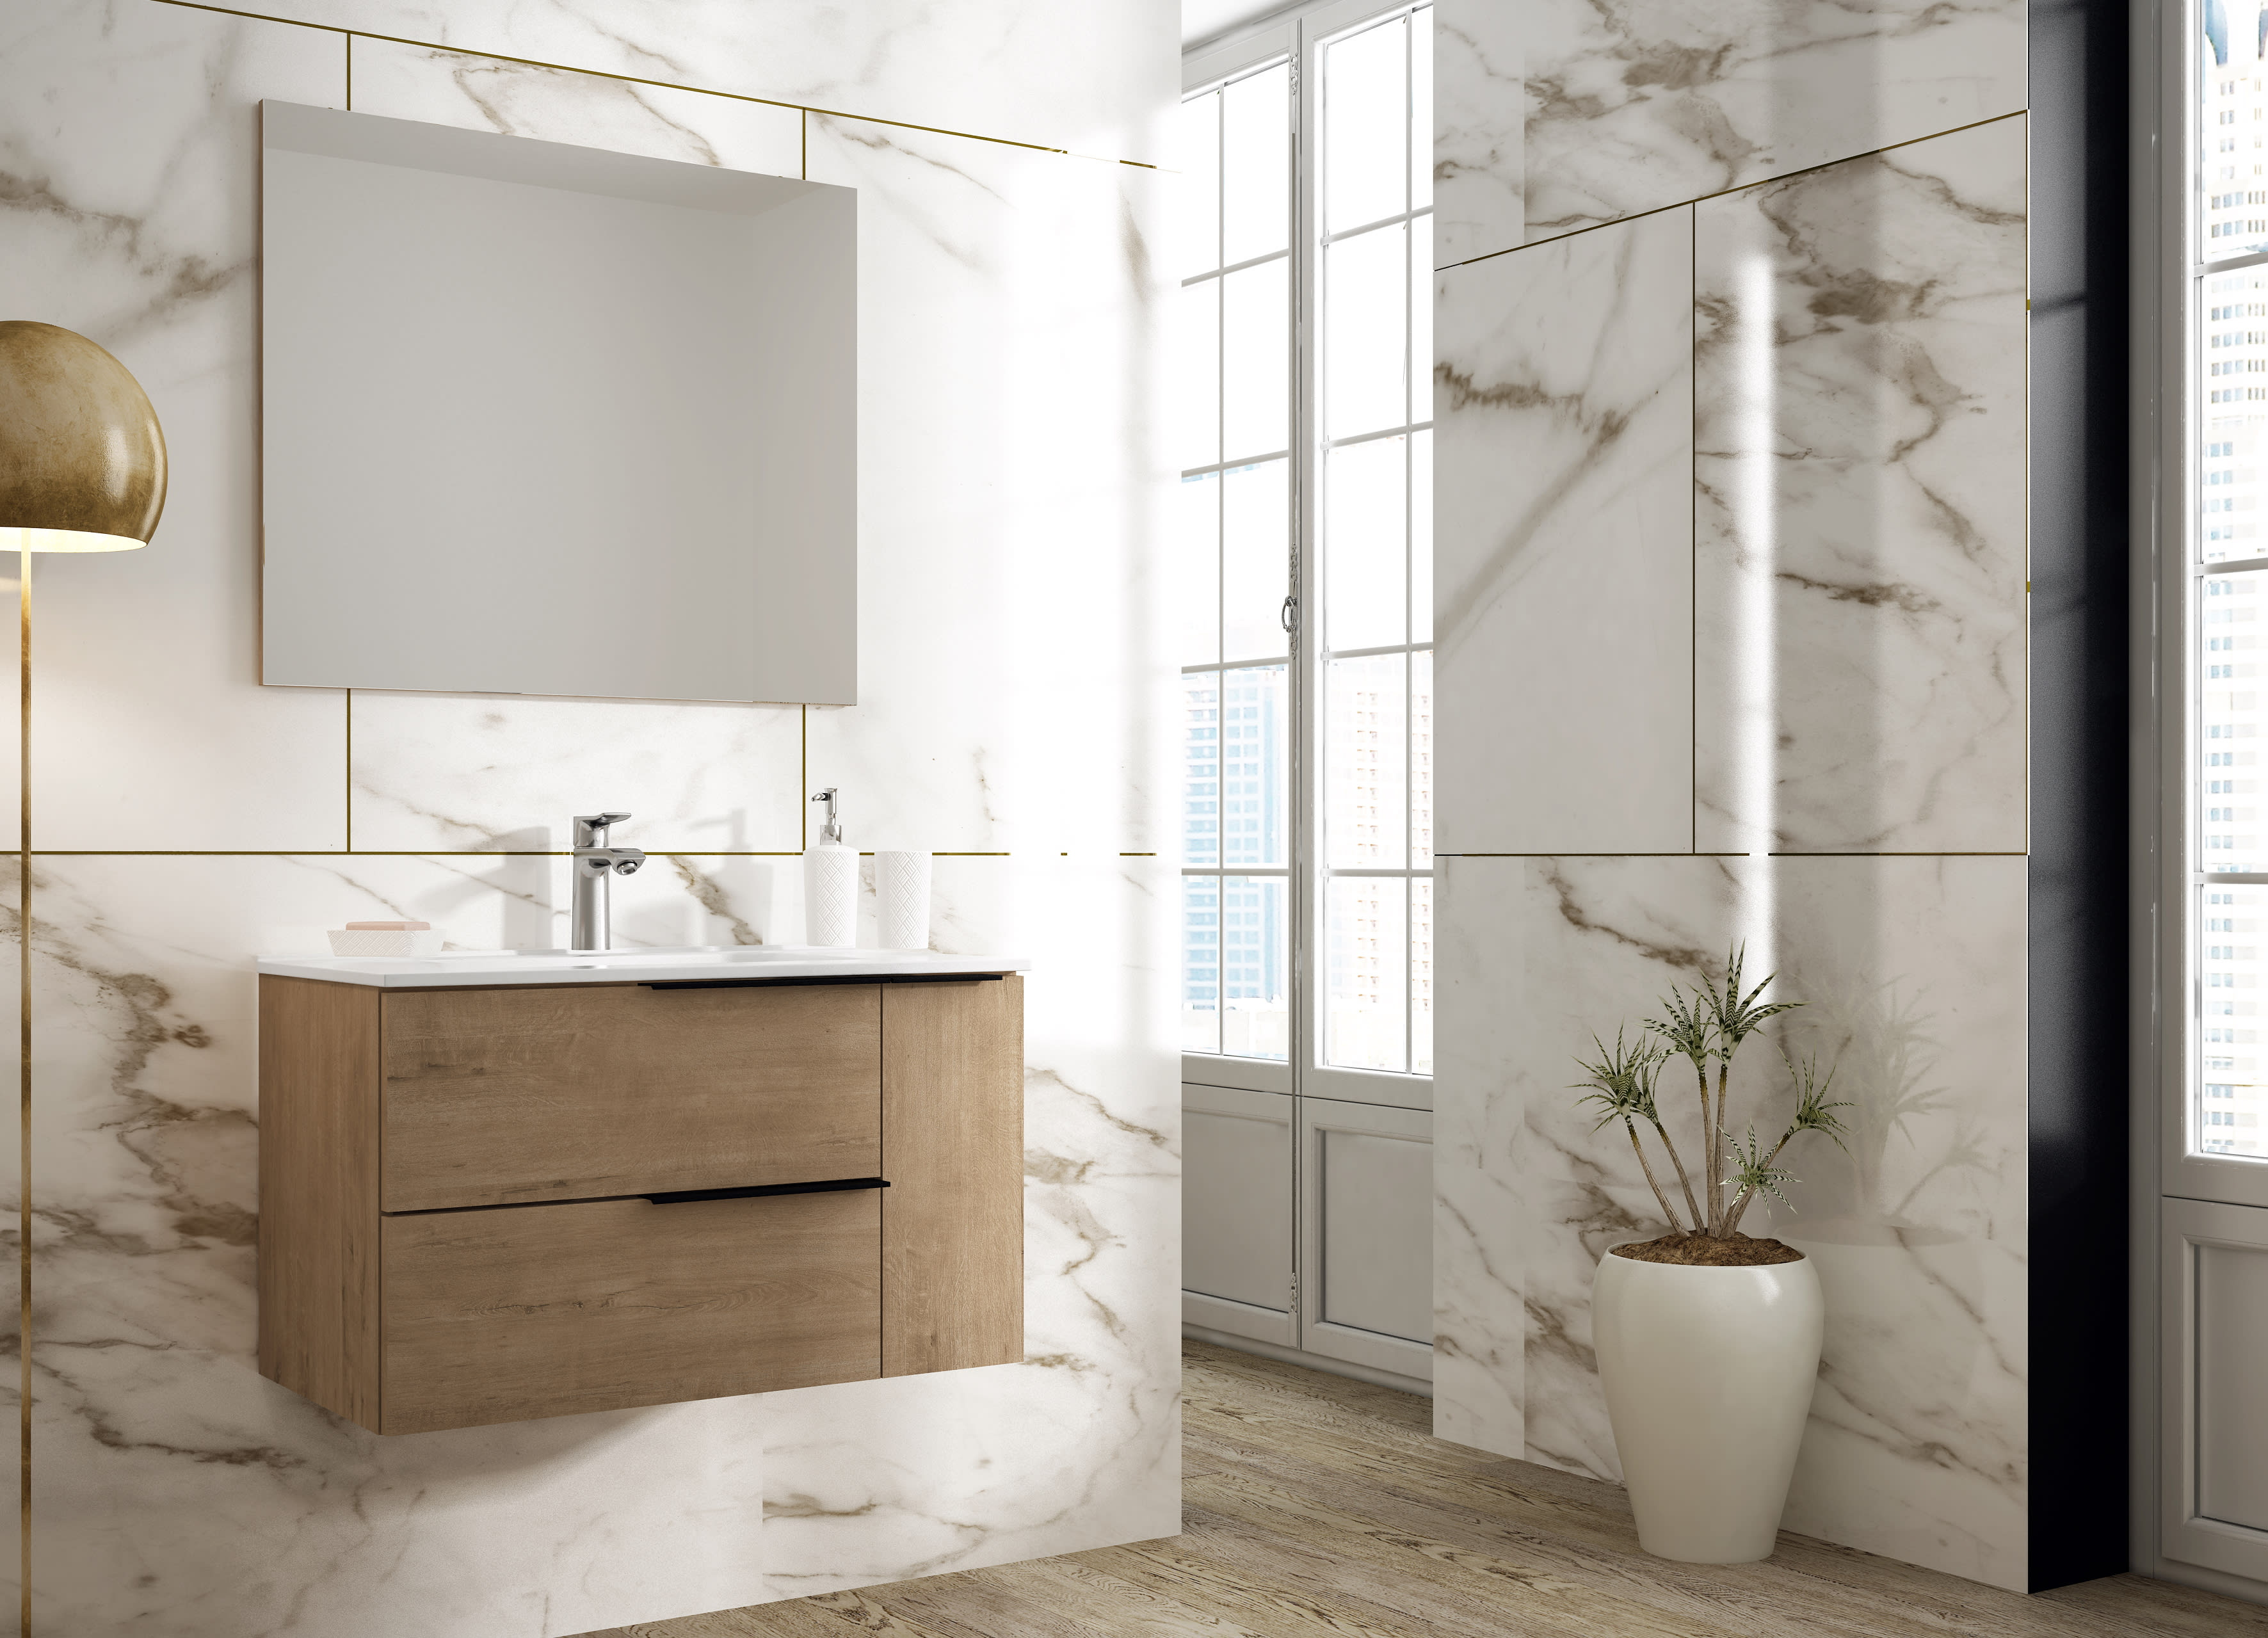 10 Muebles de lavabo nuevos y prácticos para baños modernos